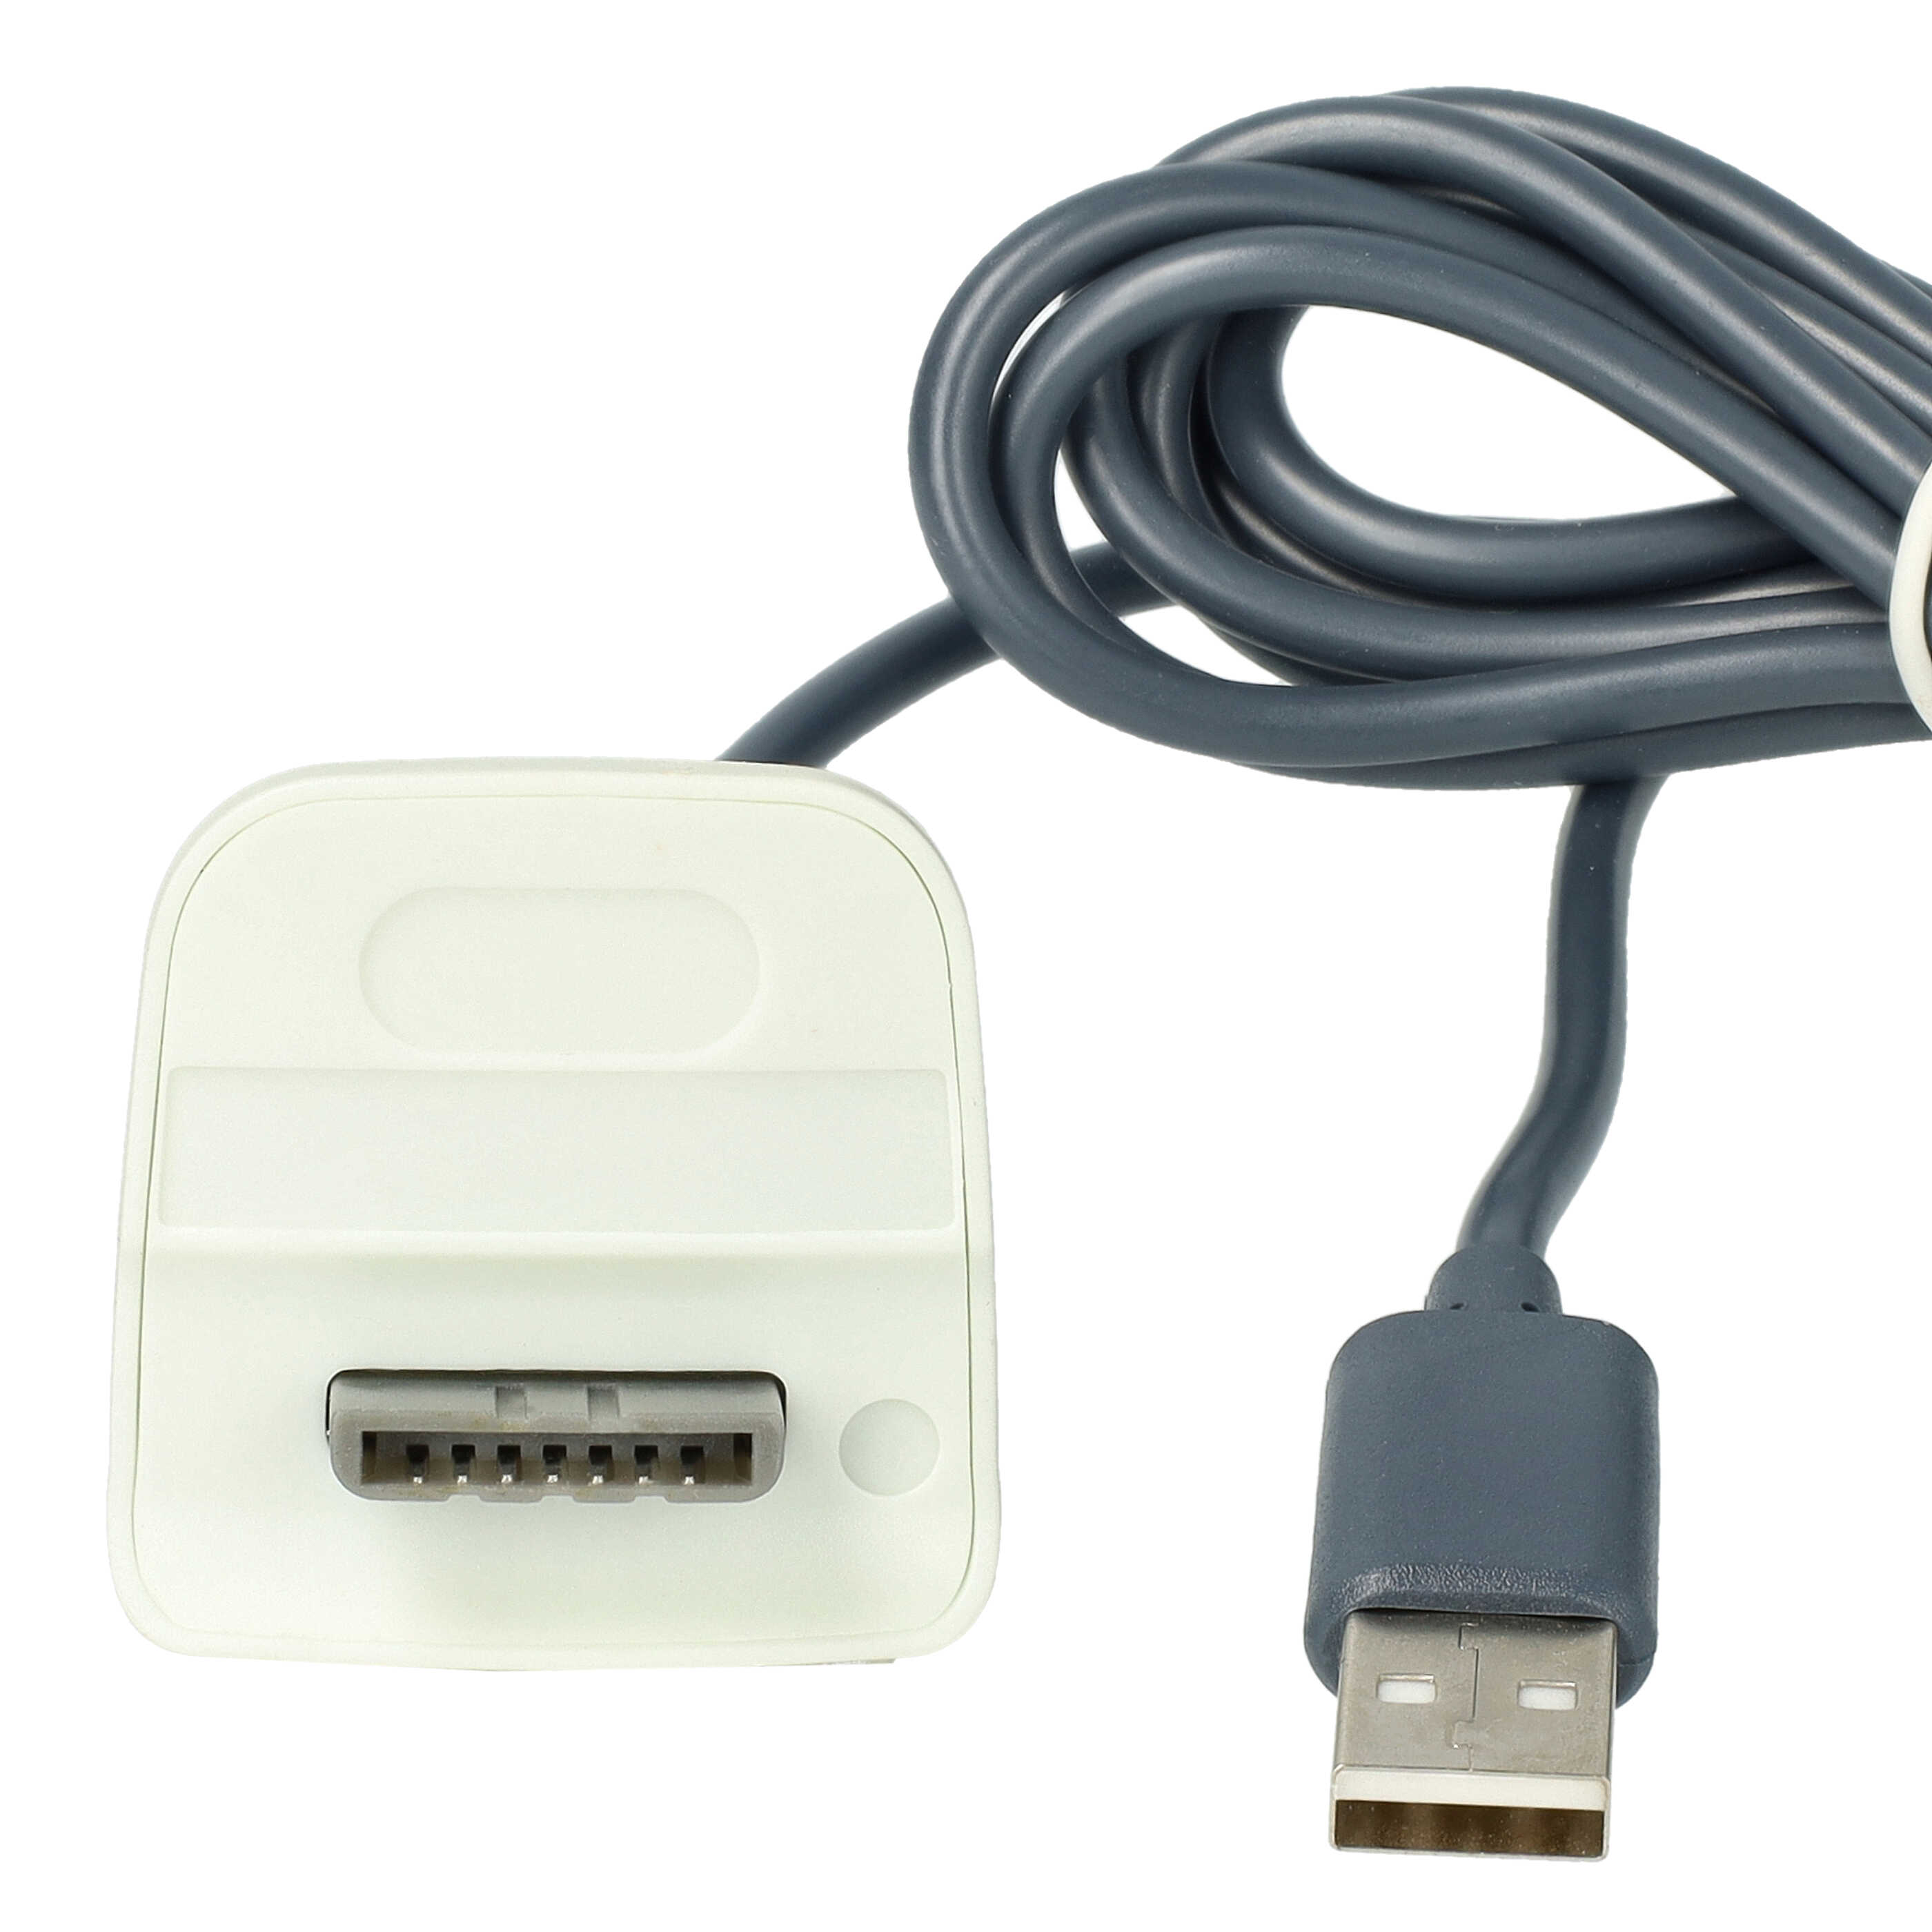 Zestaw Play&Charge Kit Microsoft Xbox 360 - 1x ładowarka, 1x przewód zasilający, 2x akumulator, czarny / biały